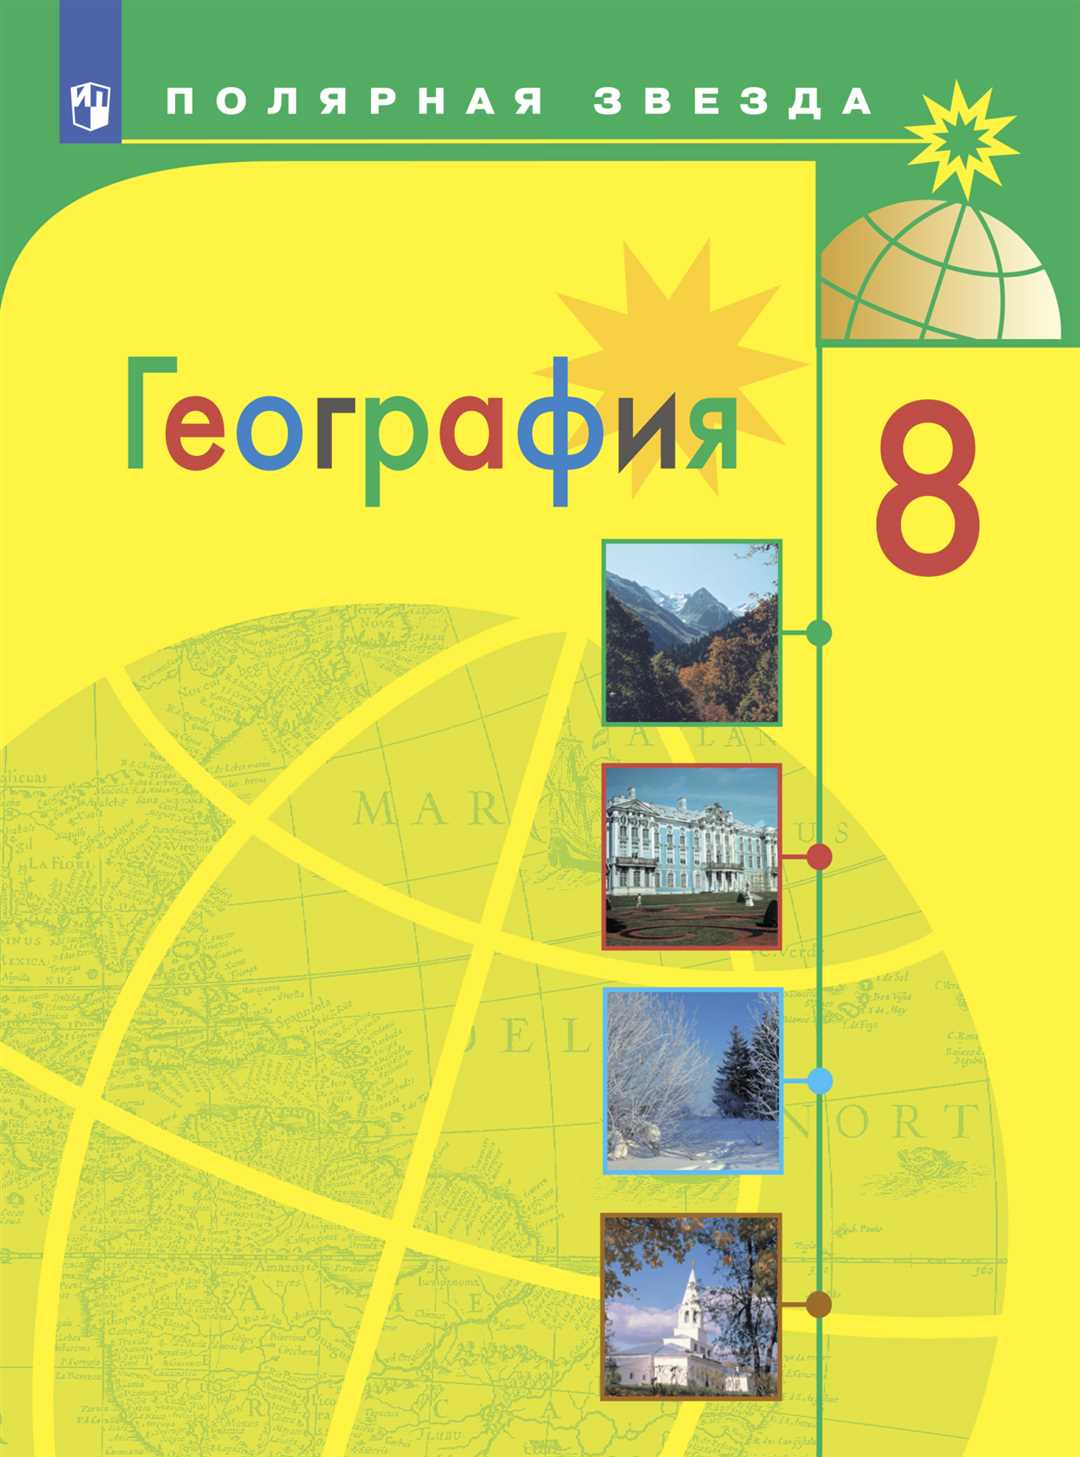 Роль Анны Алексеевны Дегтяревой в разработке рабочей программы по географии 5-9 класс 